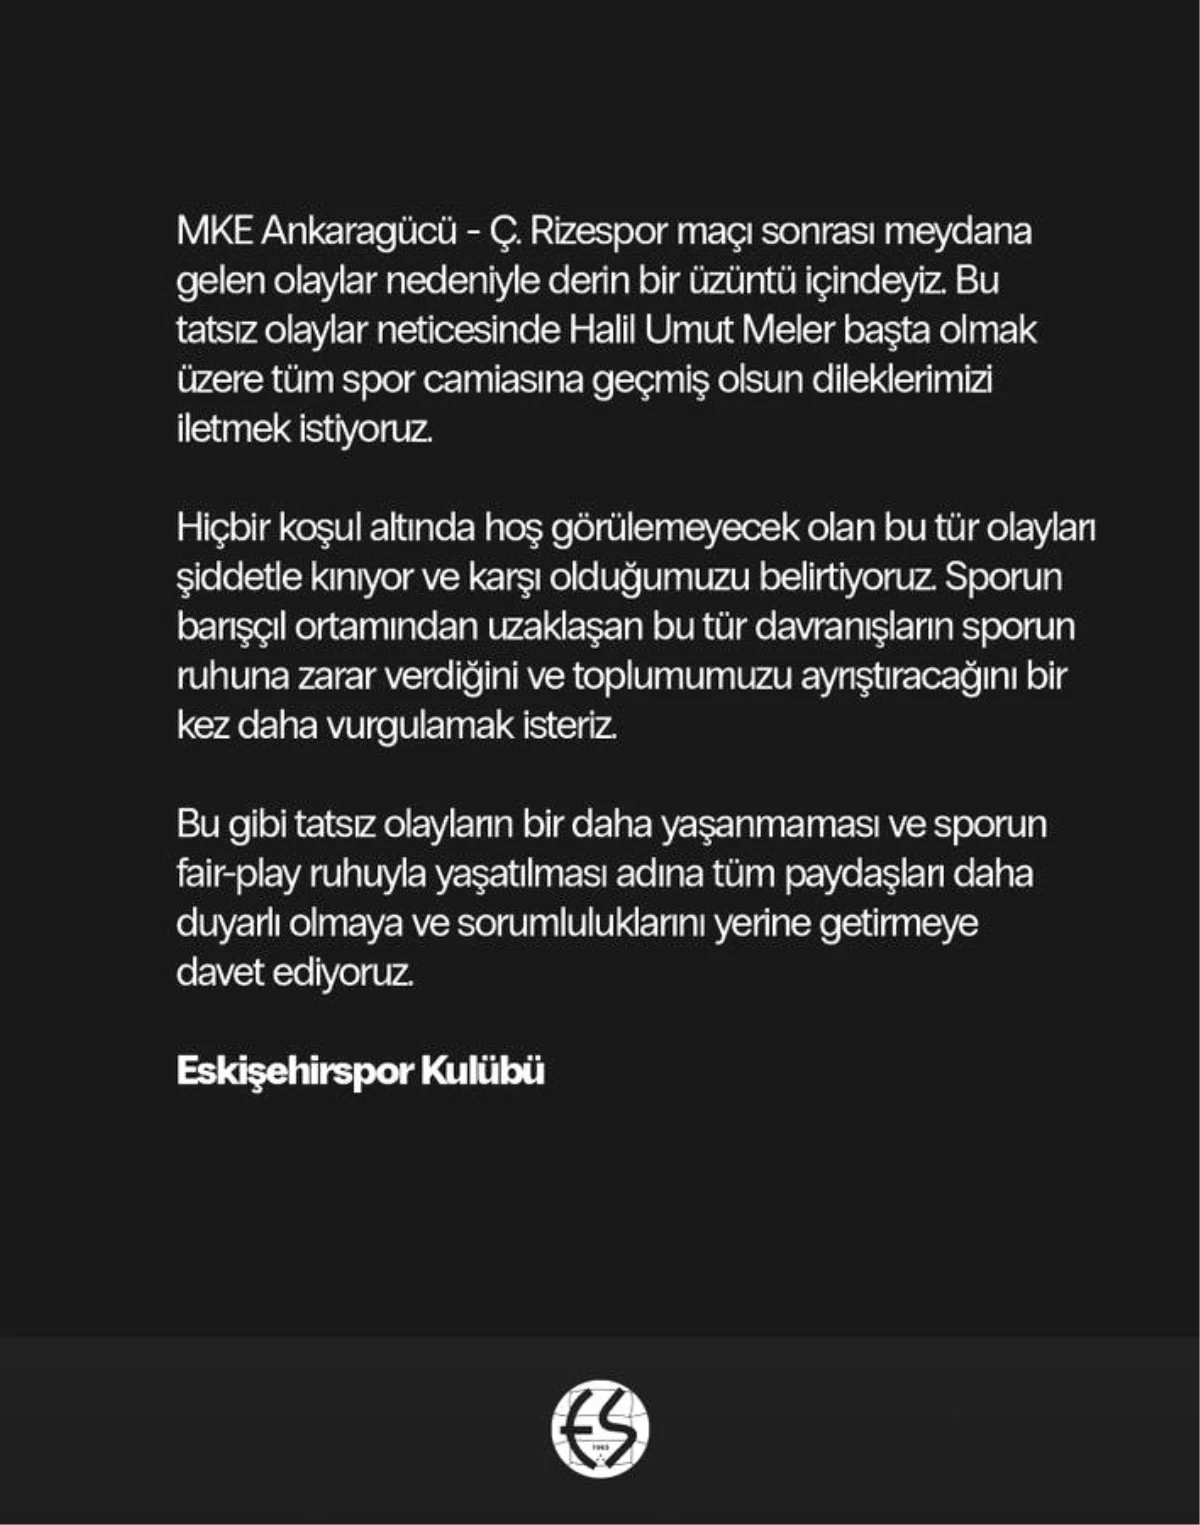 Eskişehirspor, MKE Ankaragücü-Çaykur Rizespor maçındaki olayları kınadı